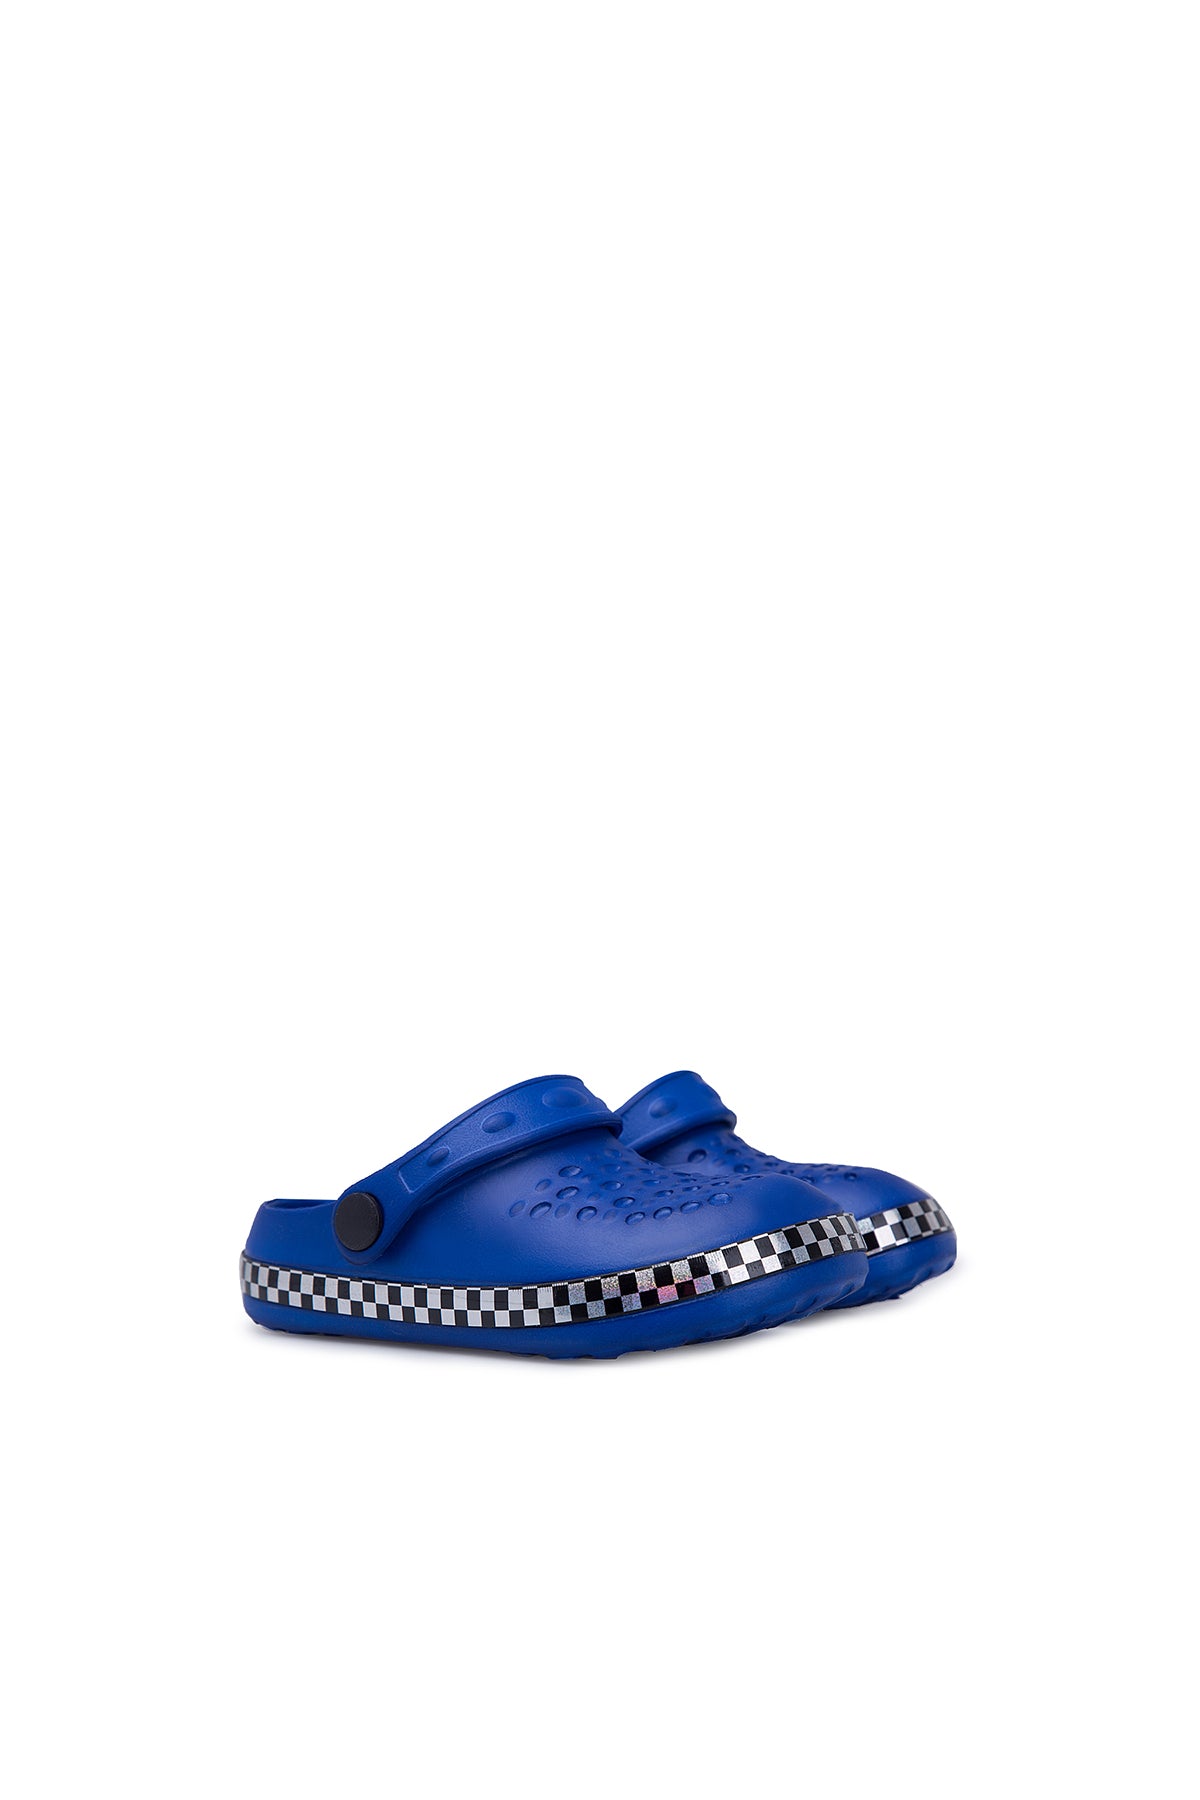 Akınalbella Çocuk Sandalet E060P106 Mavi-Gümüş-Siyah